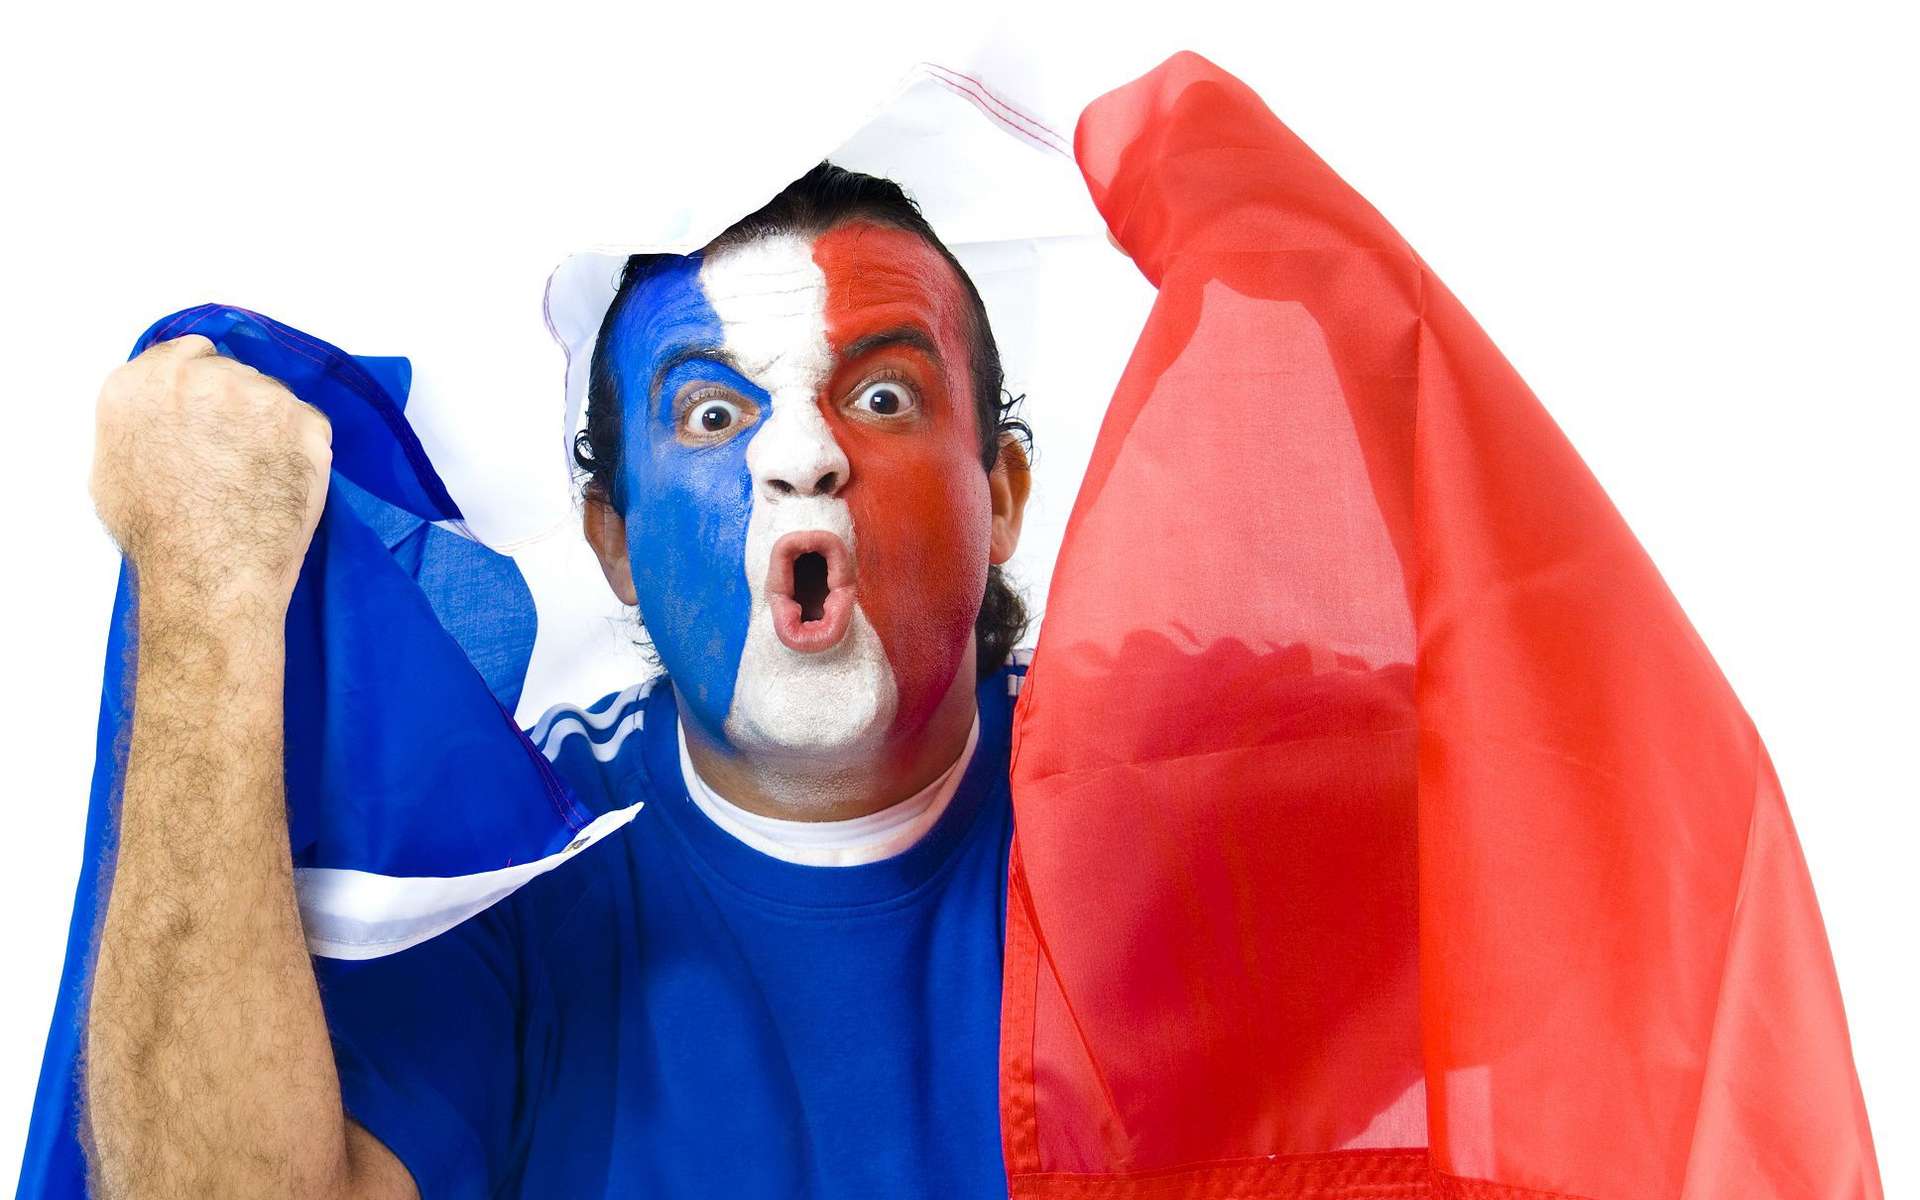 Cocorico : la France est le pays qui a le plus de chances de remporter l’Euro 2016 ! Preuves scientifiques à l’appui. © Vinicius Tupinamba, Shutterstock